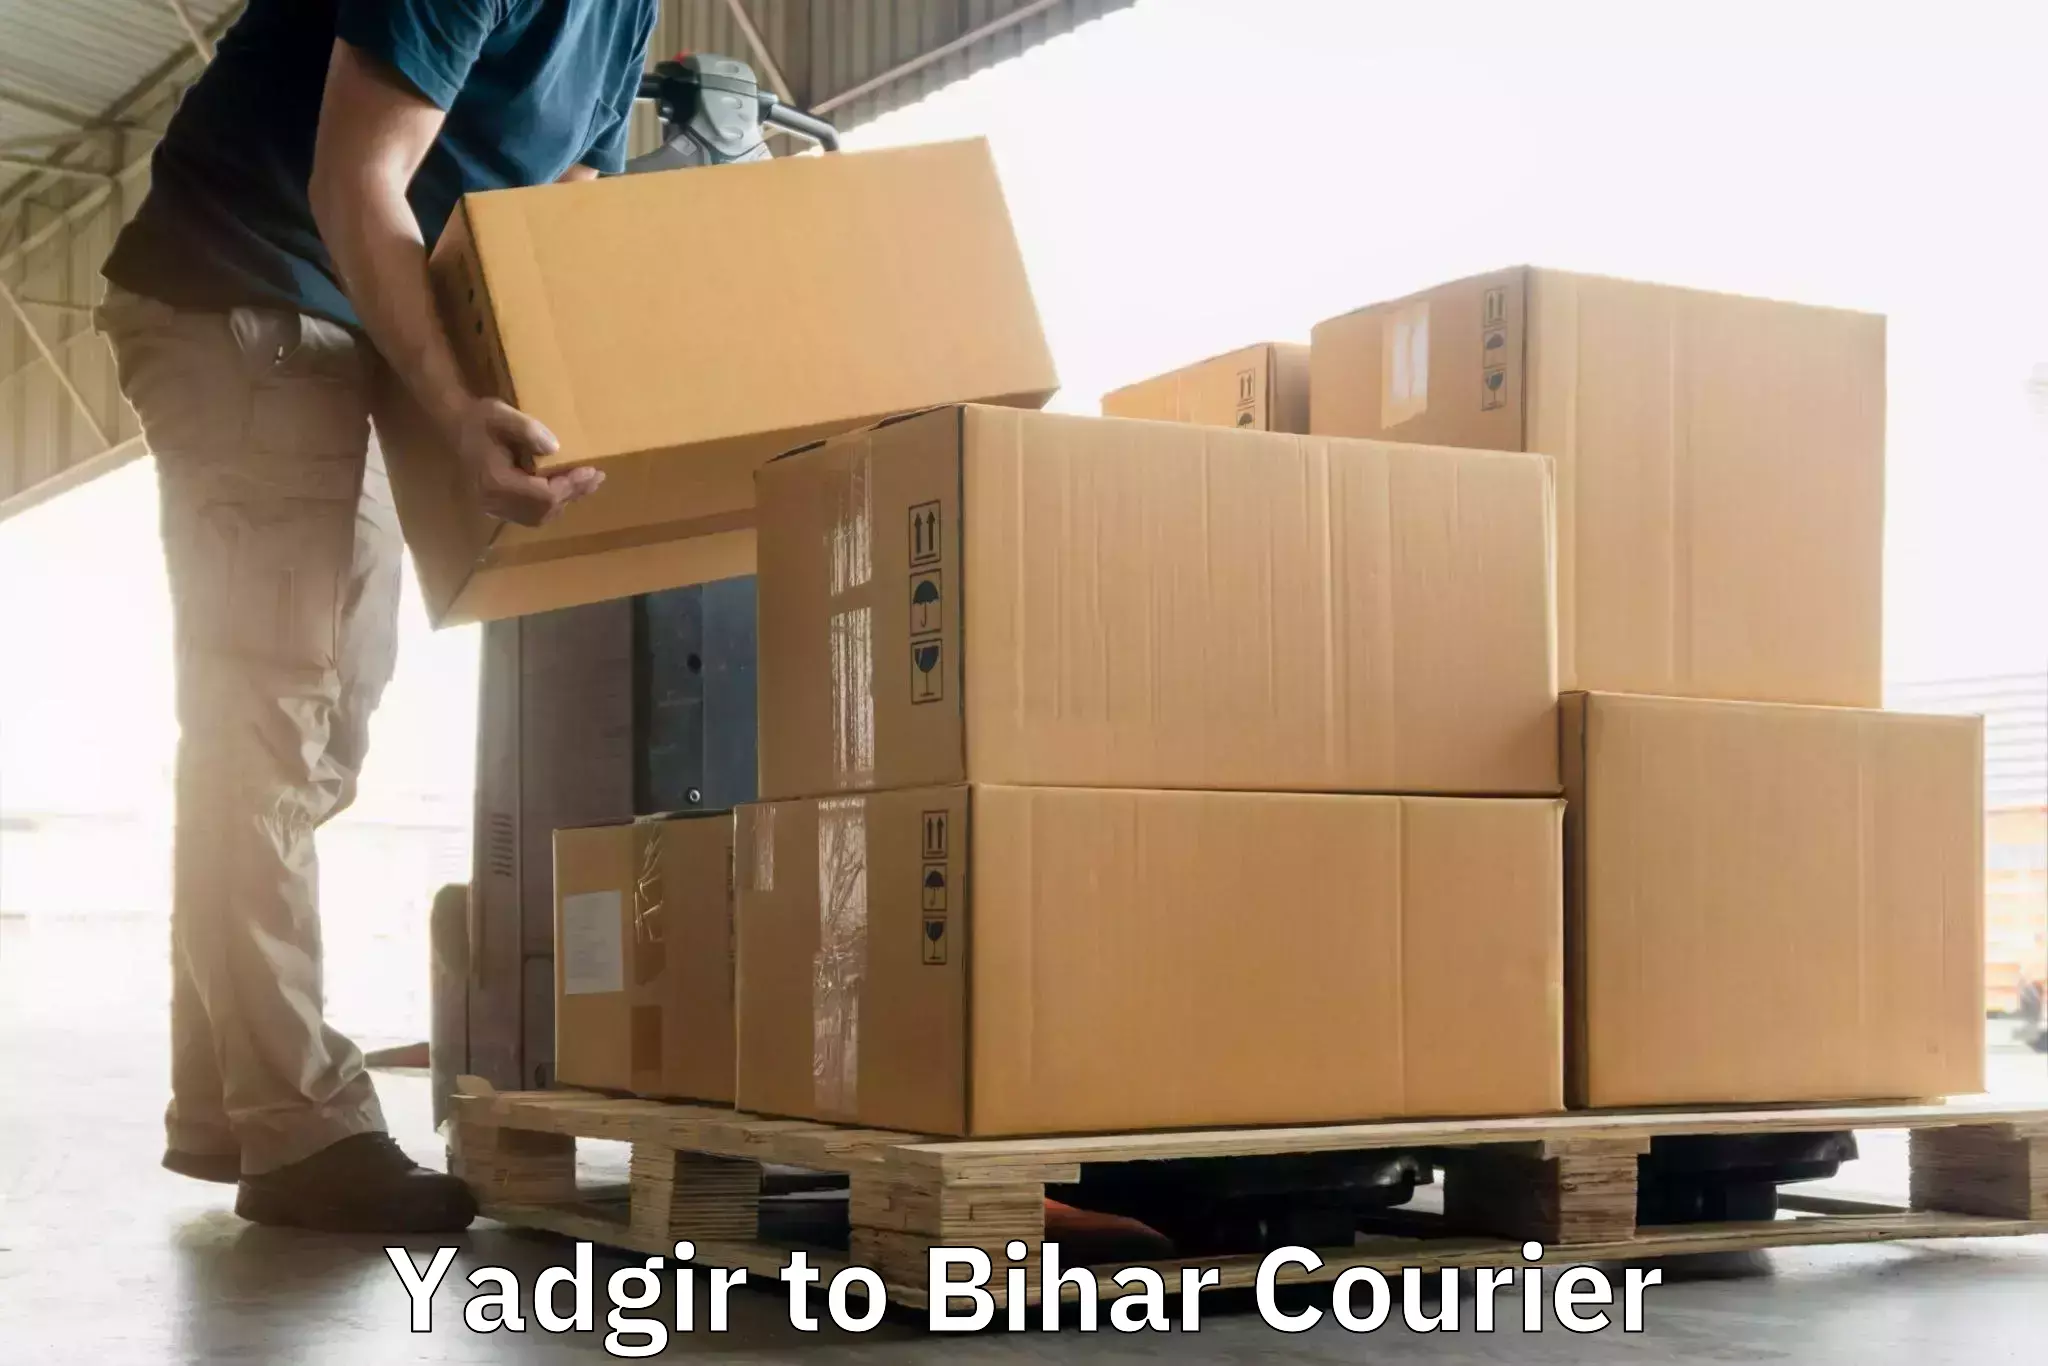 Multi-city courier Yadgir to Nuaon